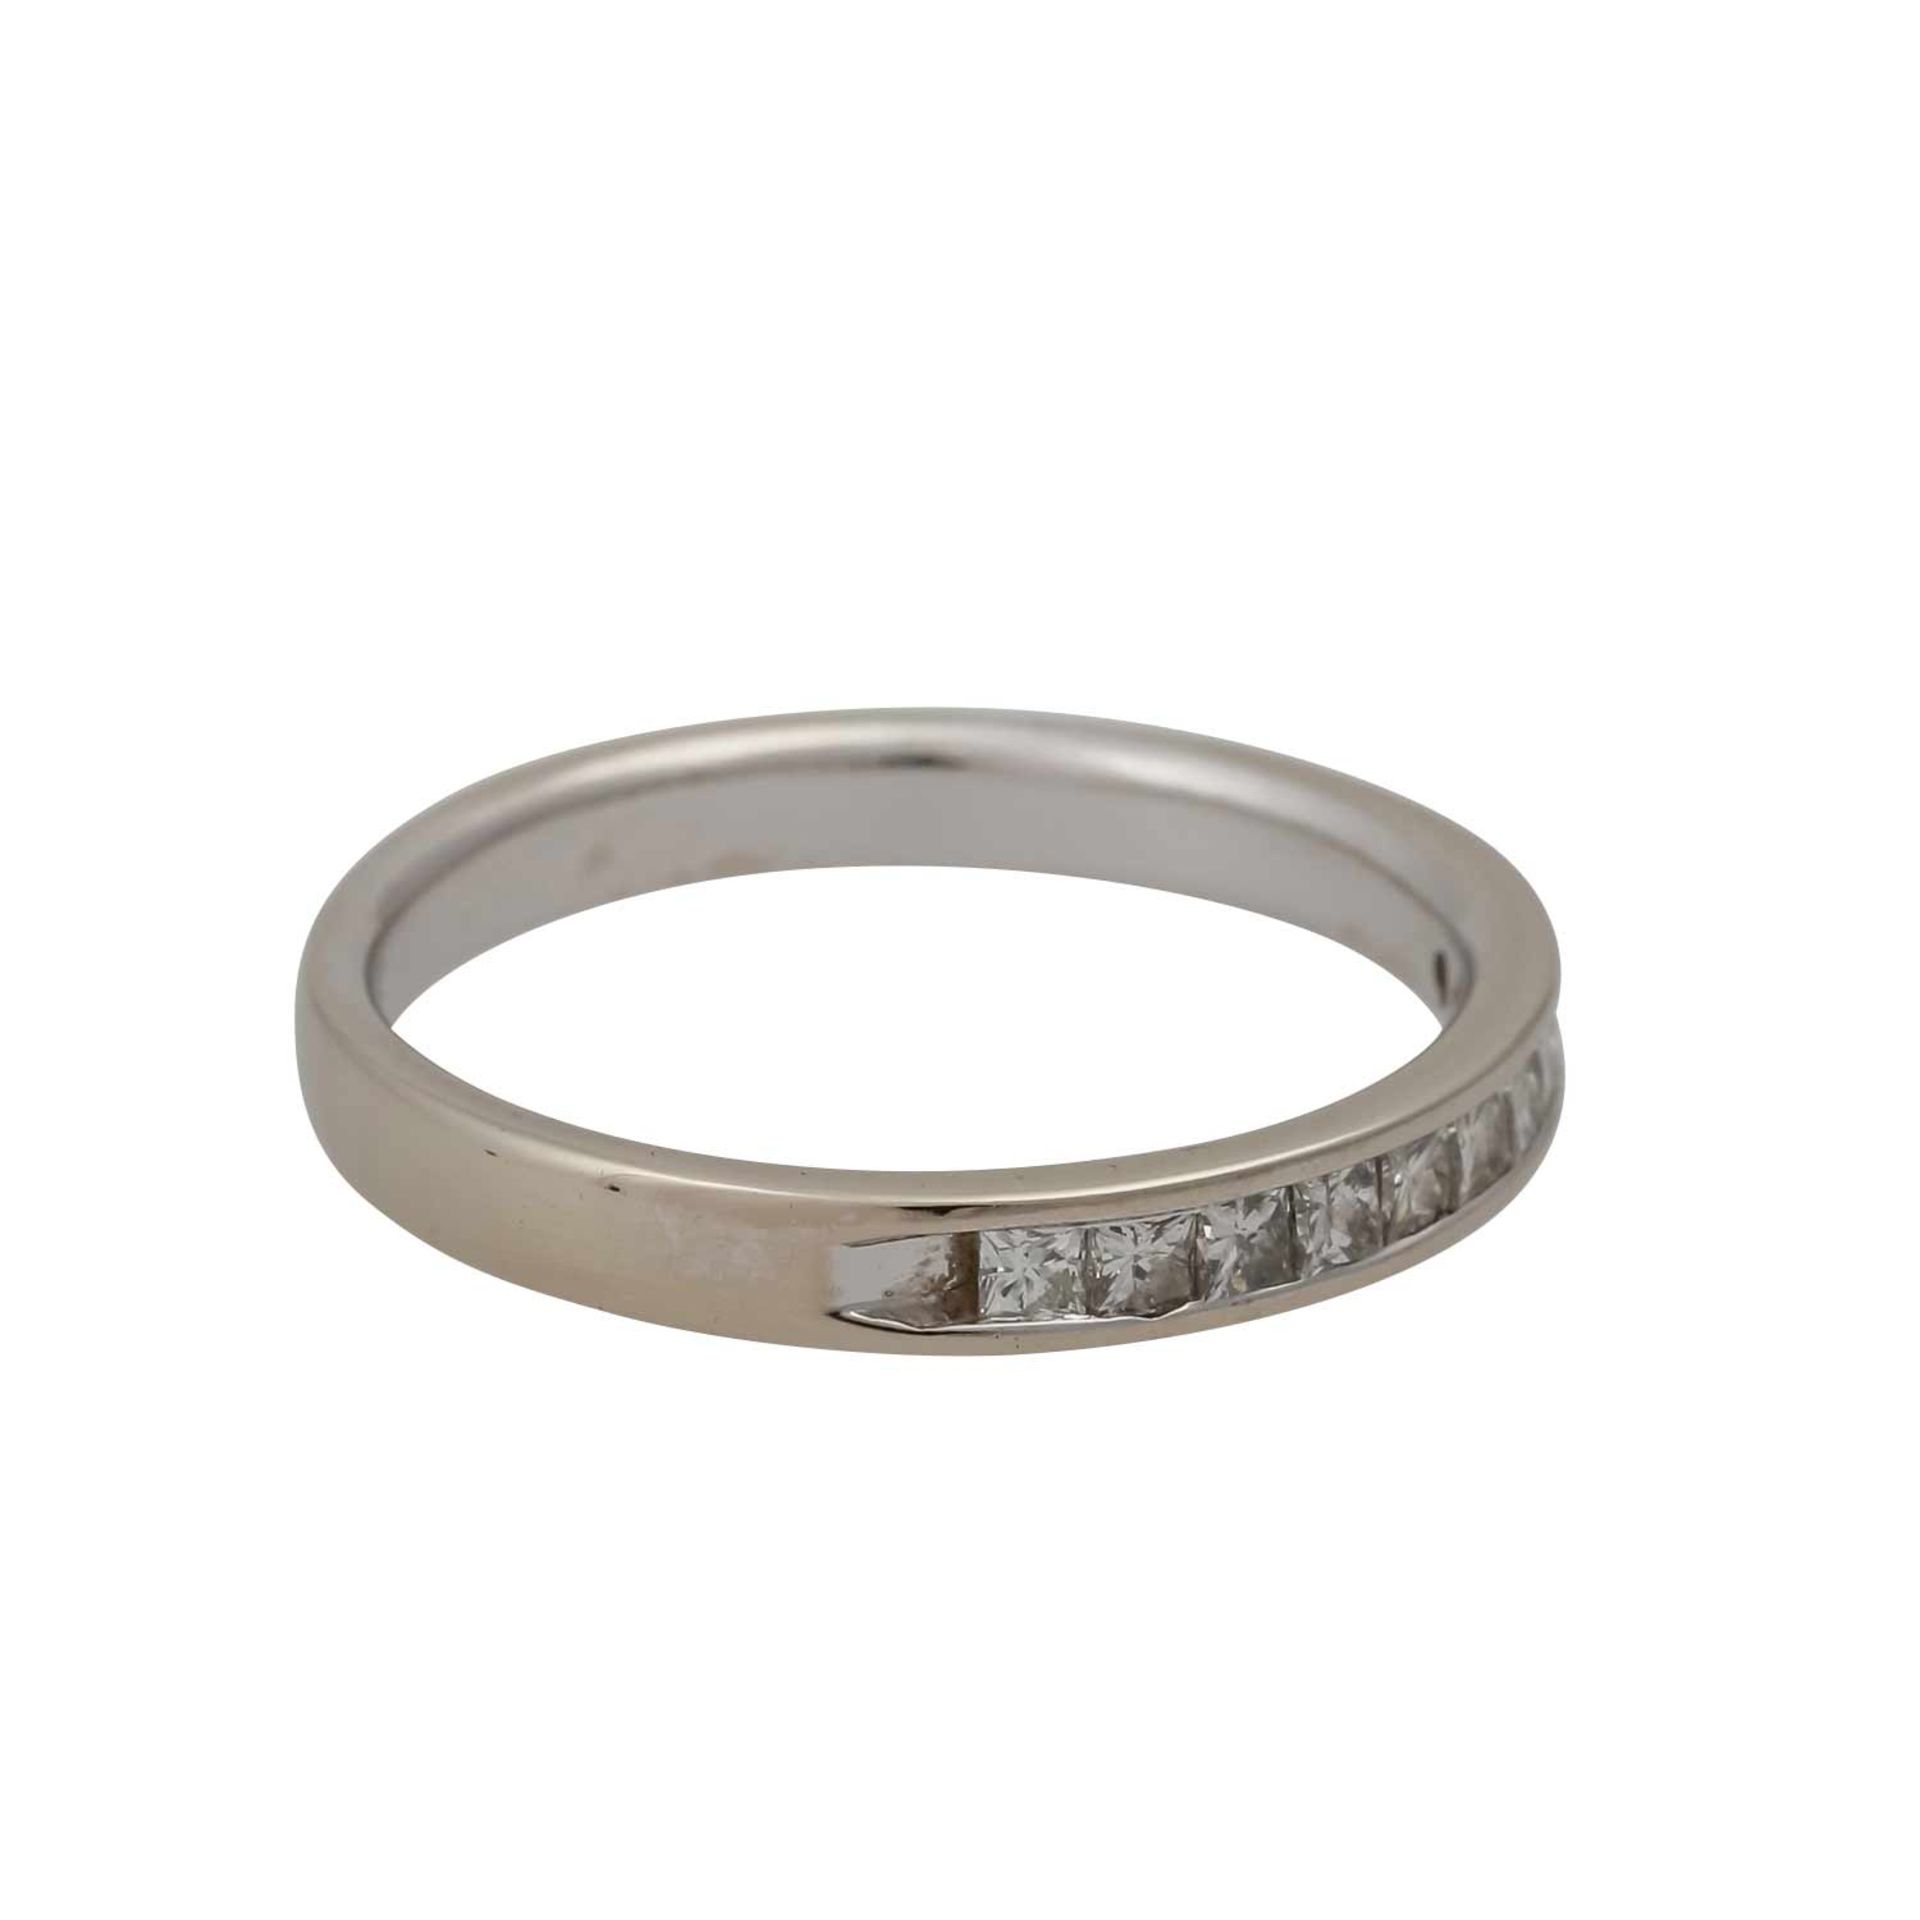 Halbmemoire Ring mit Prinzessdiamanten zus. ca. 0,40 ct,mittlere bis gute Farbe u. Reinheit, WG 14K, - Bild 2 aus 4